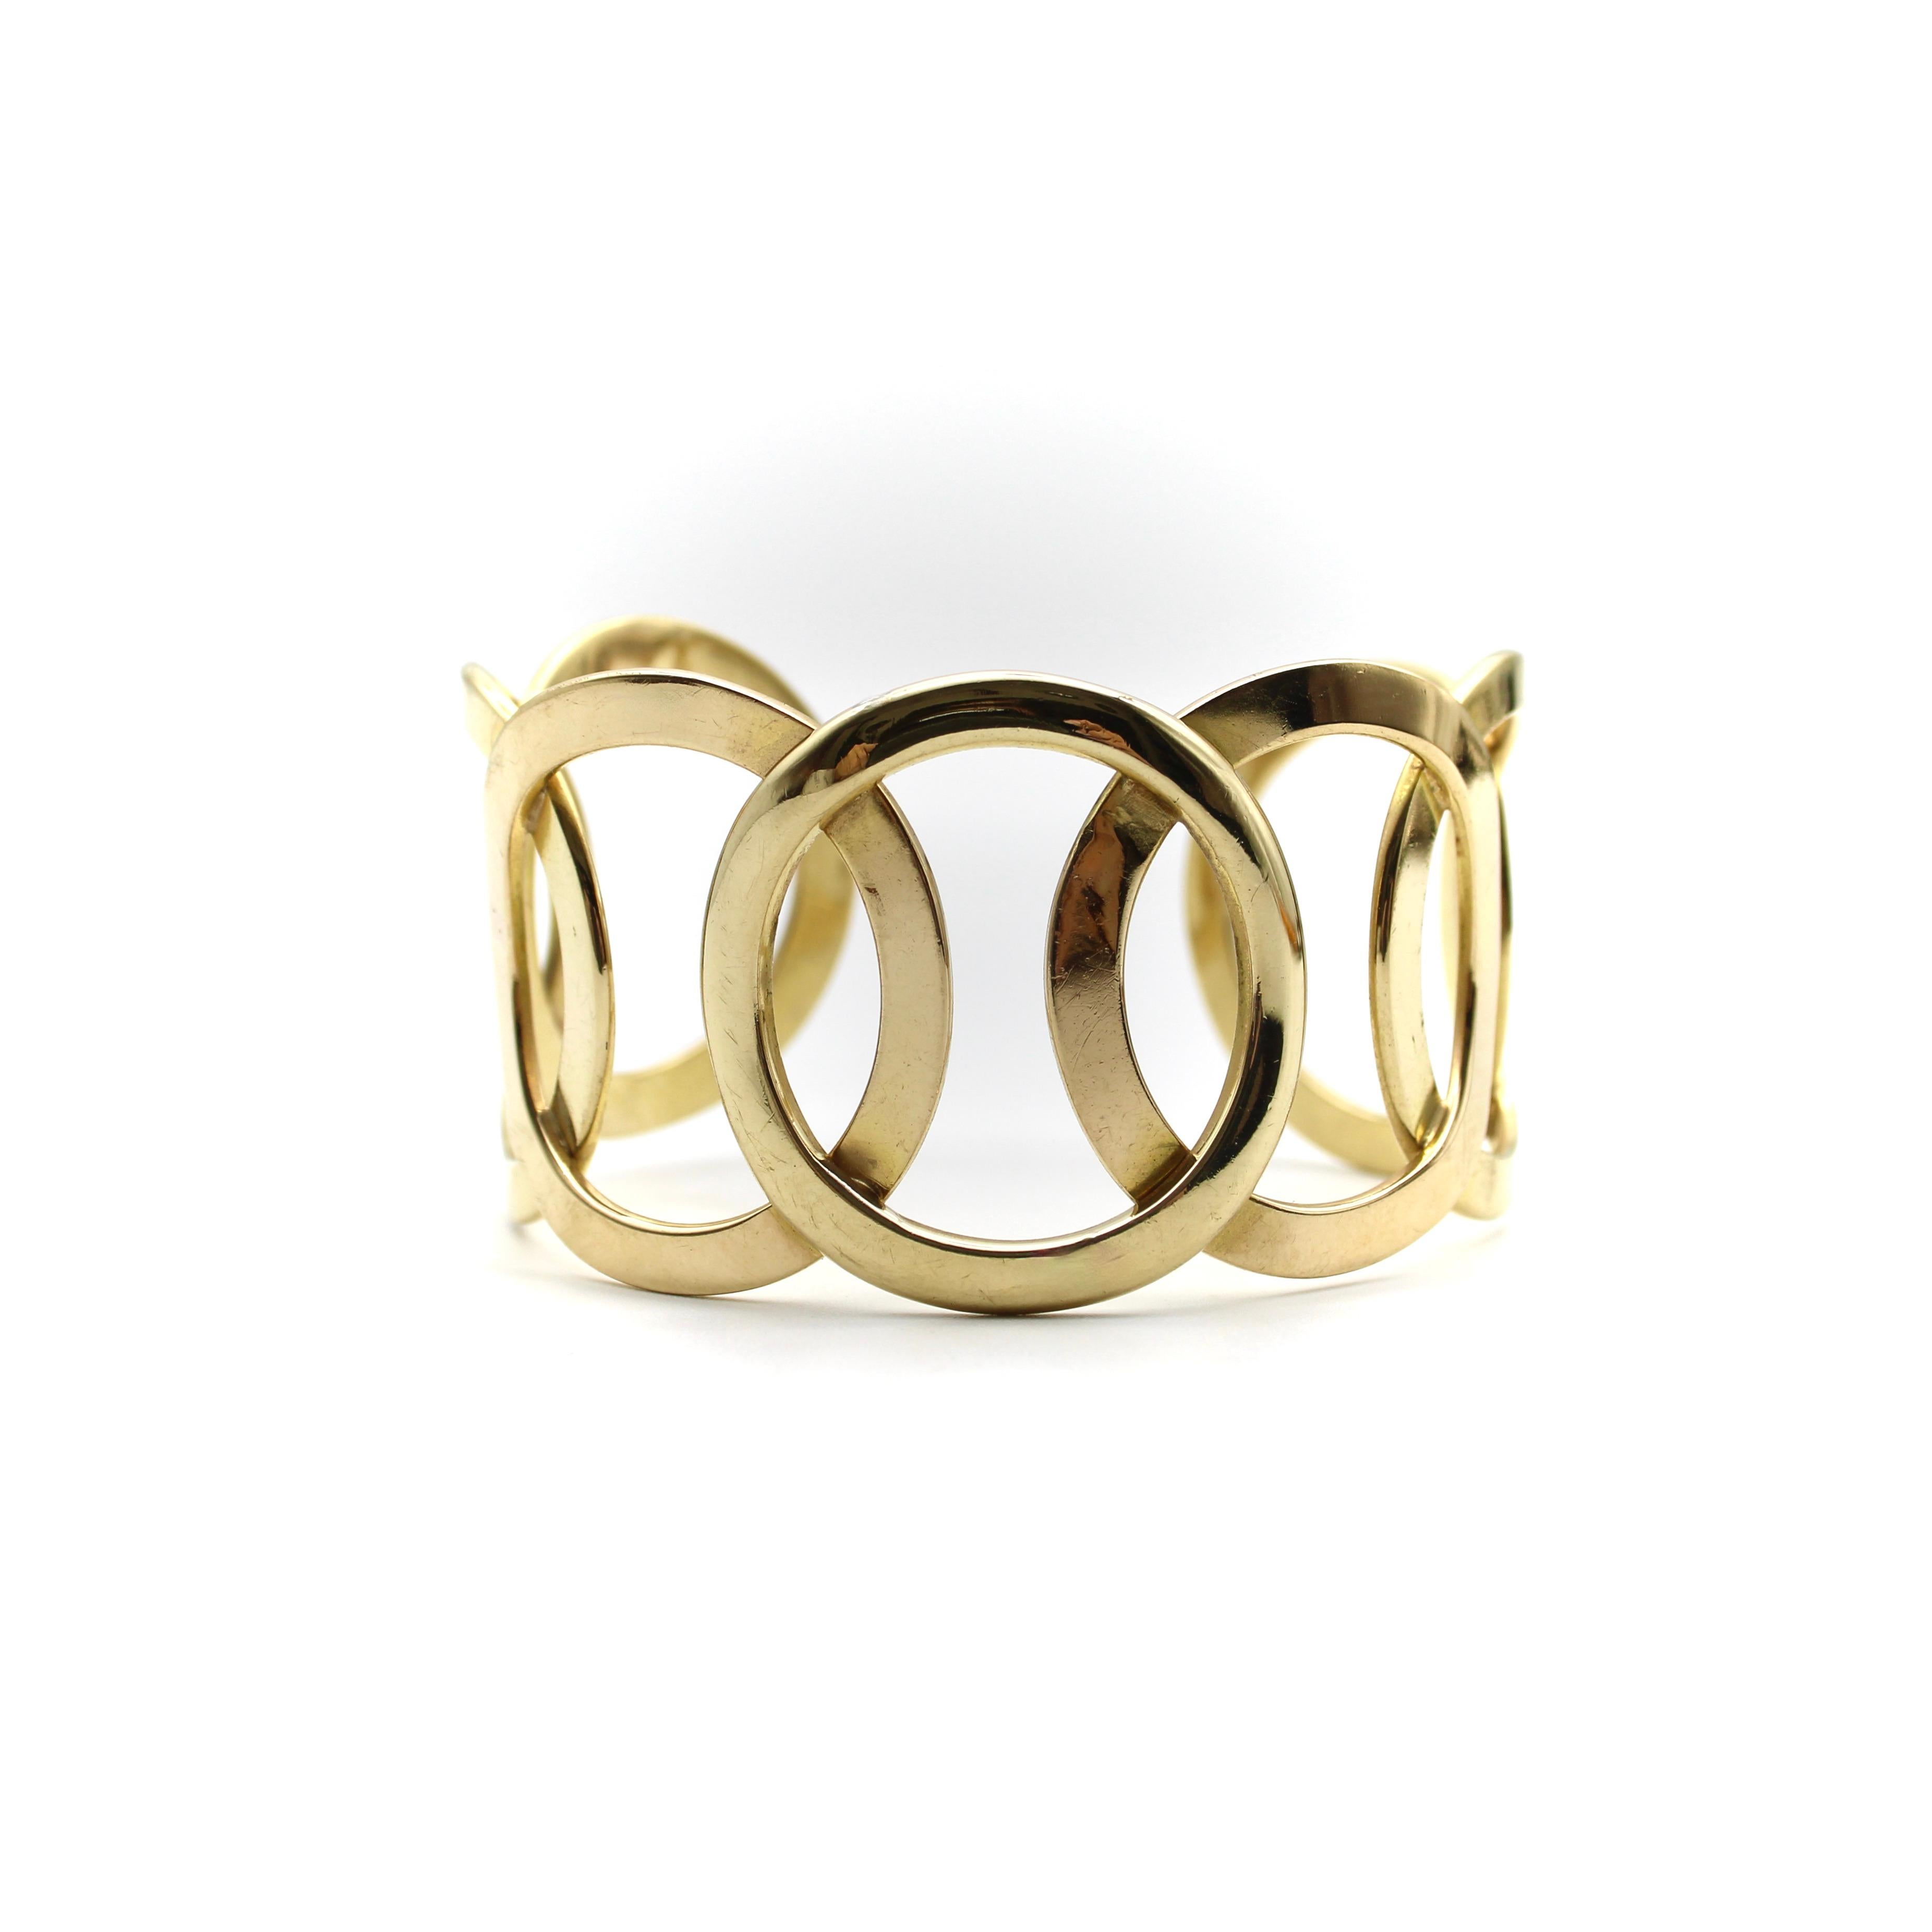 Dieses fabelhafte Manschettenarmband erinnert an die olympischen Ringe und besteht aus einem zentralen Kreis, in dem sich die Kreise auf beiden Seiten spiegeln. Dieses modernistische Armband aus den 1970er-Jahren nutzt den negativen Raum, um eine